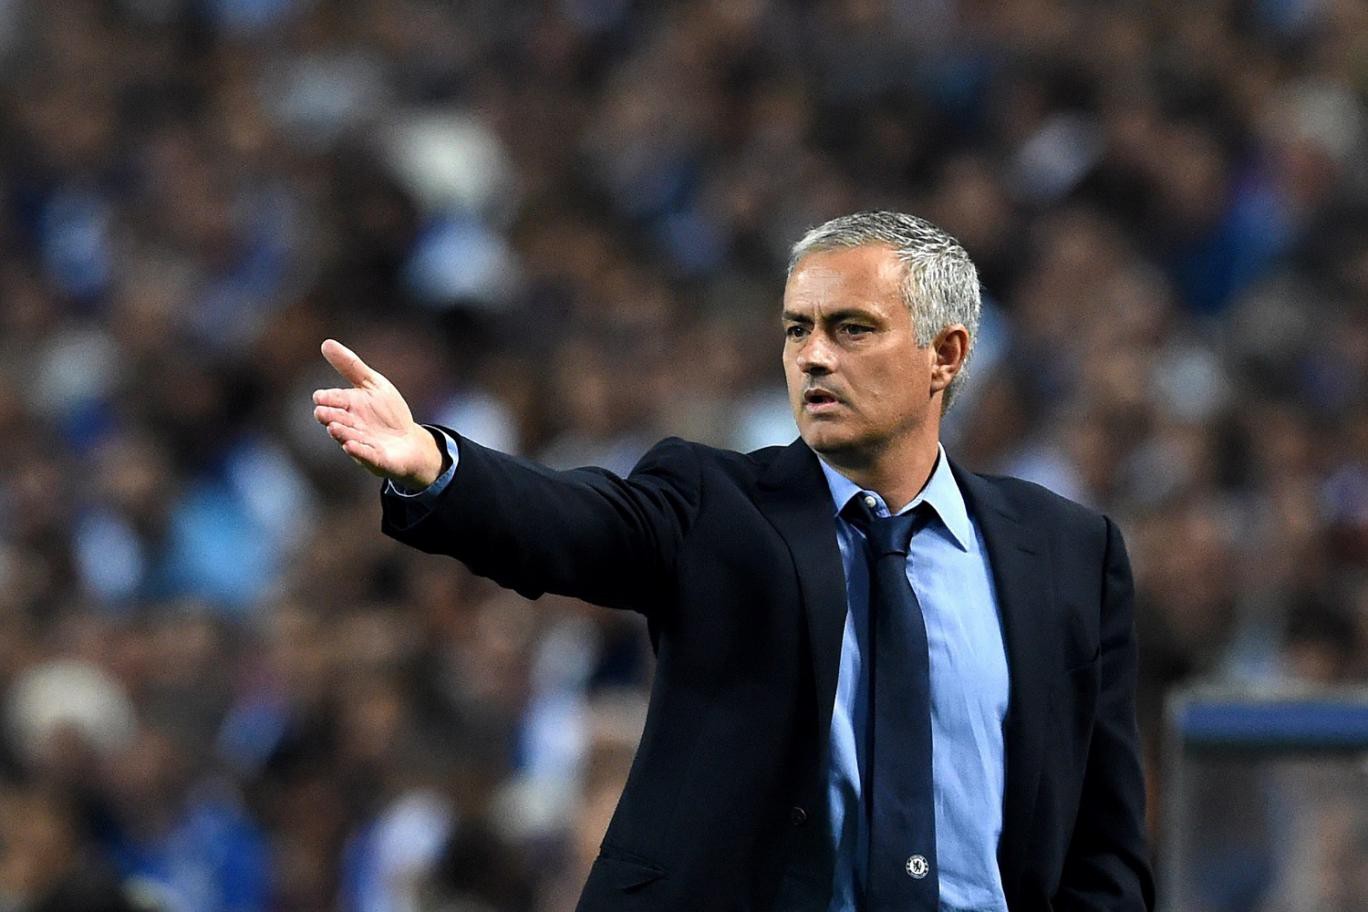 Jose Mourinho giải thích cách ông ấy thay đổi sự nghiệp trong cuộc phỏng vấn